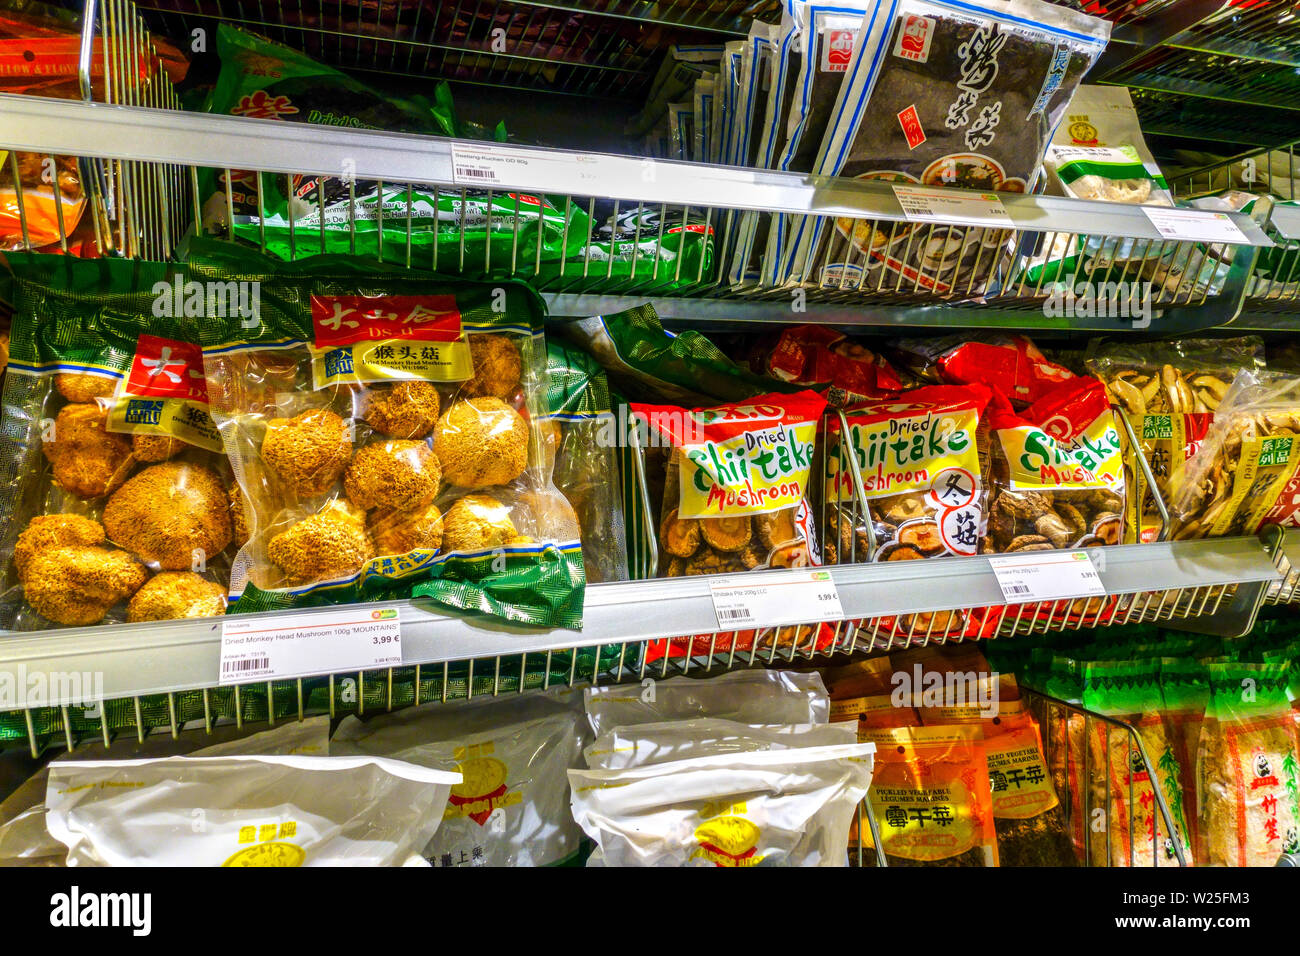 Asiatischer Supermarkt 'Go Asia' Supermarktregale, getrocknete Pilze, Dresden, Deutschland Supermarktregal Stockfoto